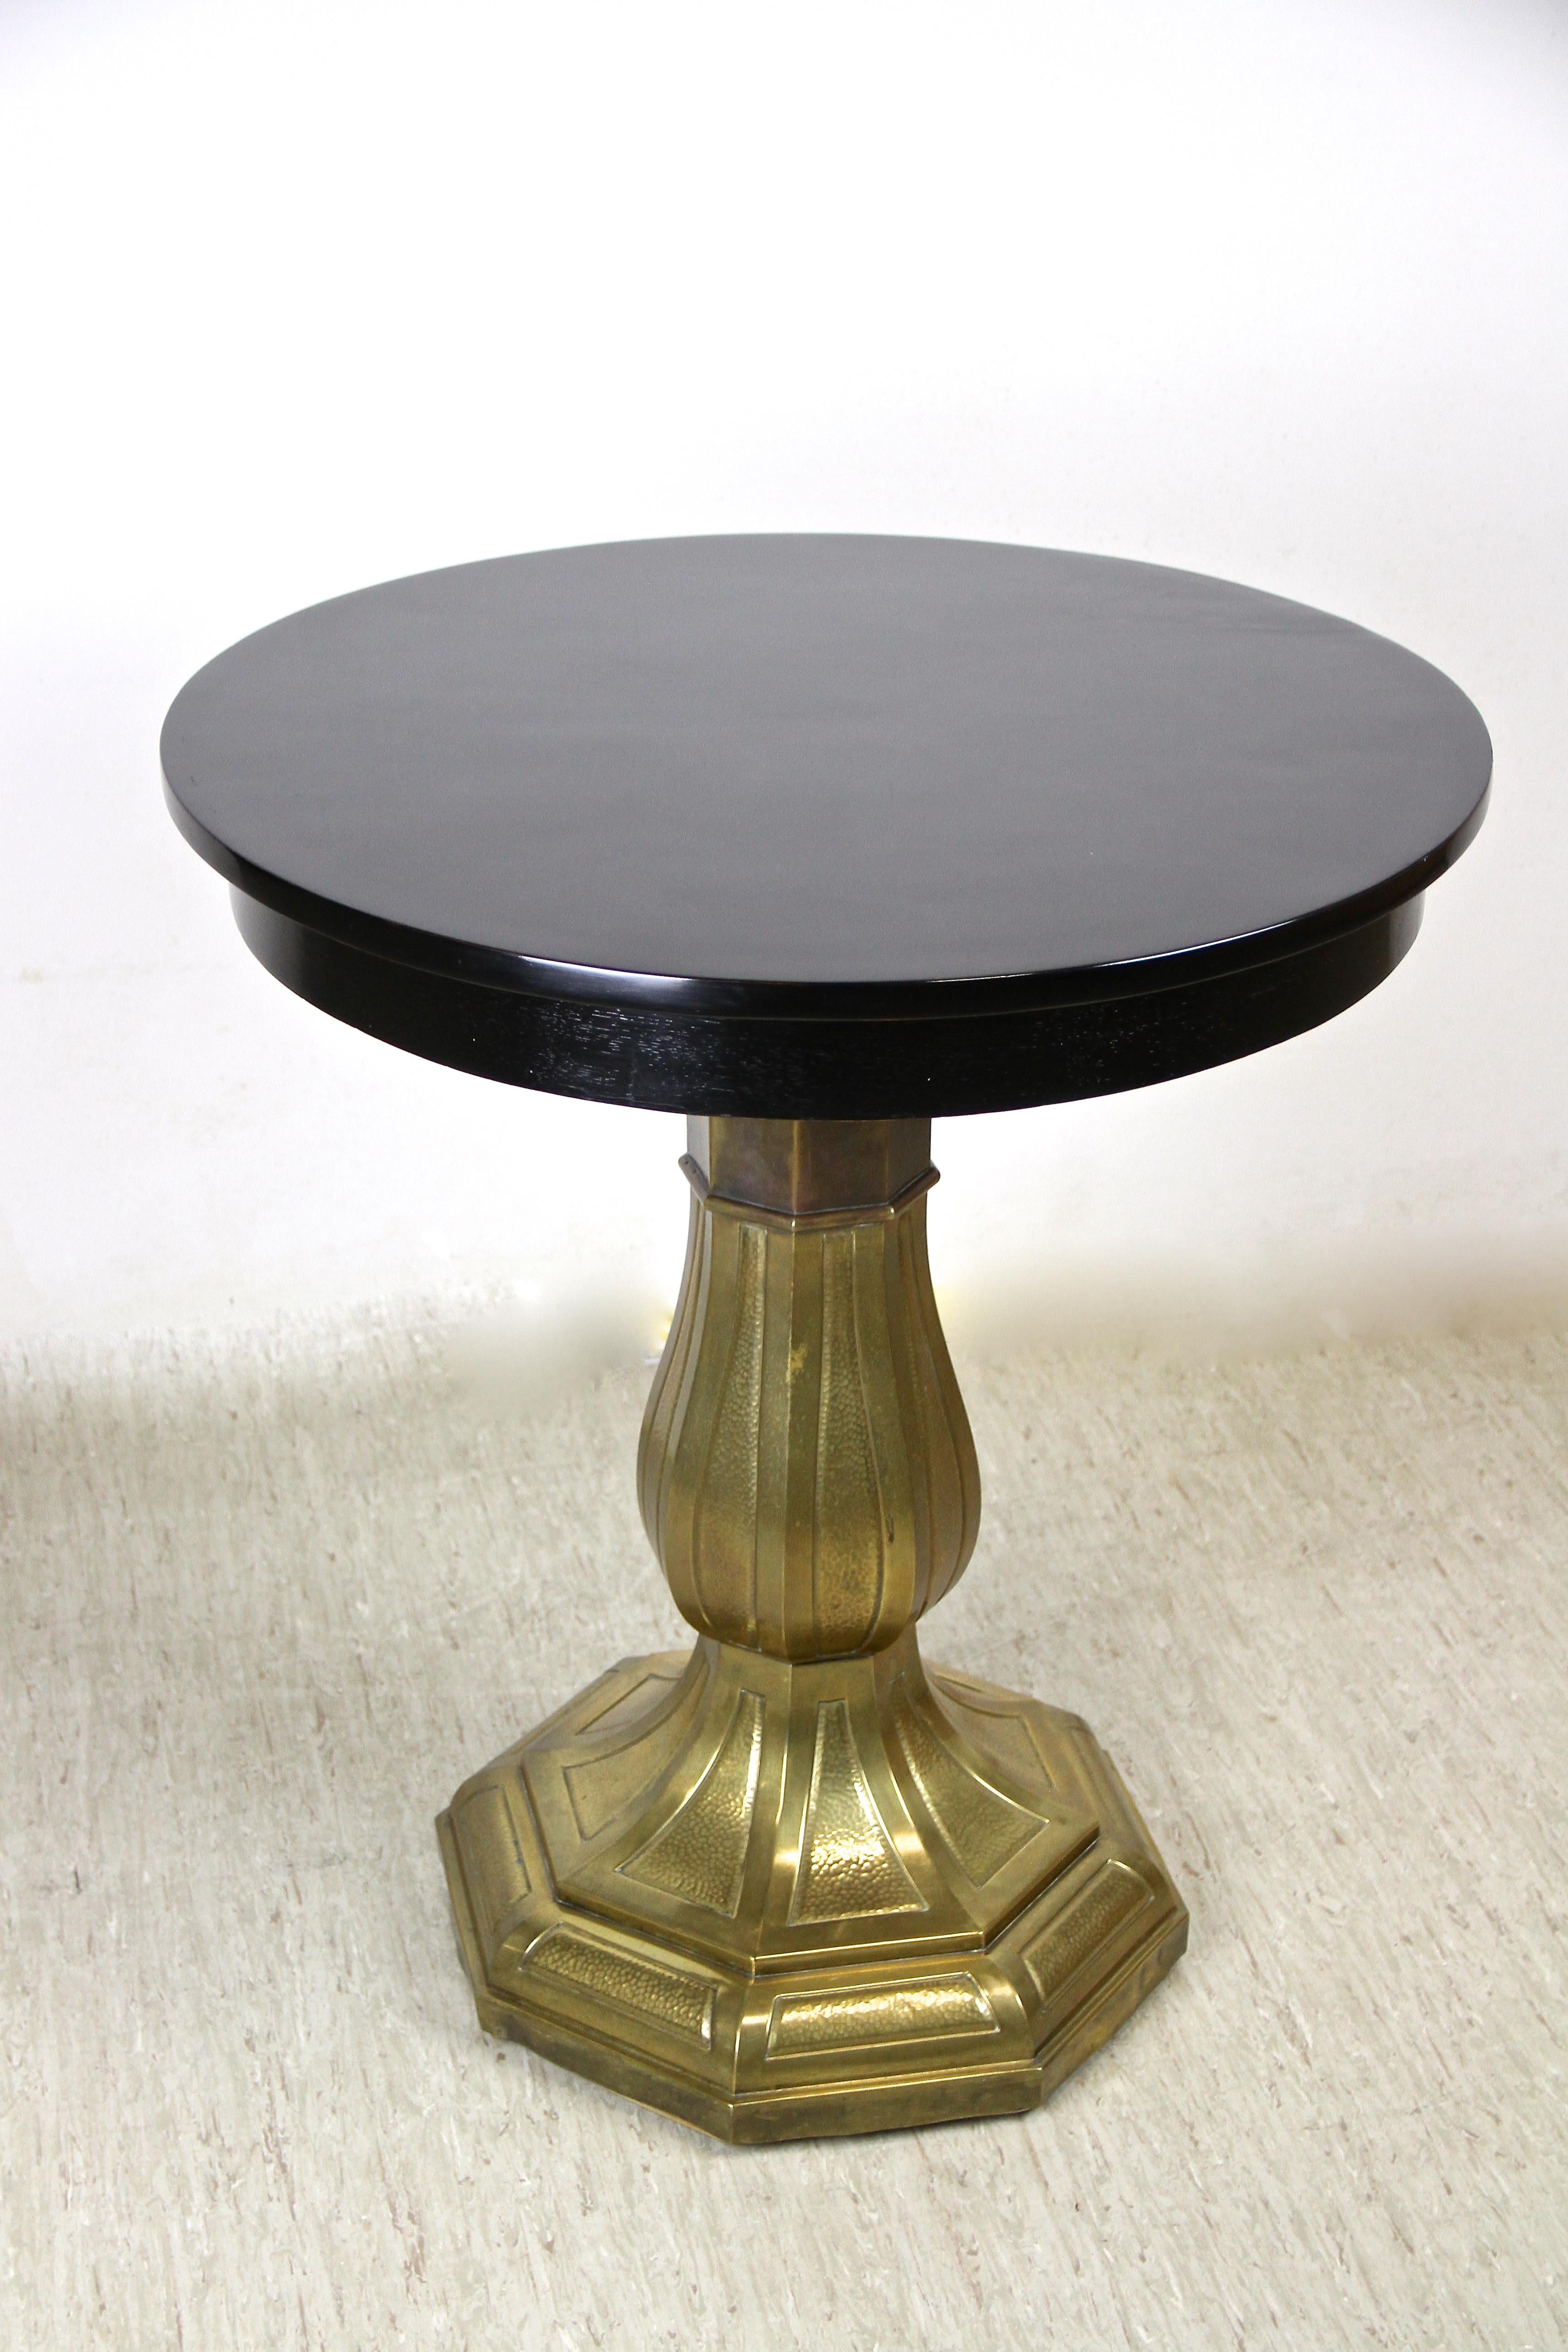 Bemerkenswerter schwarz lackierter Jugendstil Couchtisch aus Wien/ Österreich aus der Zeit um 1910. Die runde, glänzende Tischplatte sitzt auf einer kunstvoll geformten Säule mit achteckigem Sockel. Das messing-/kupferbeschichtete Meisterstück